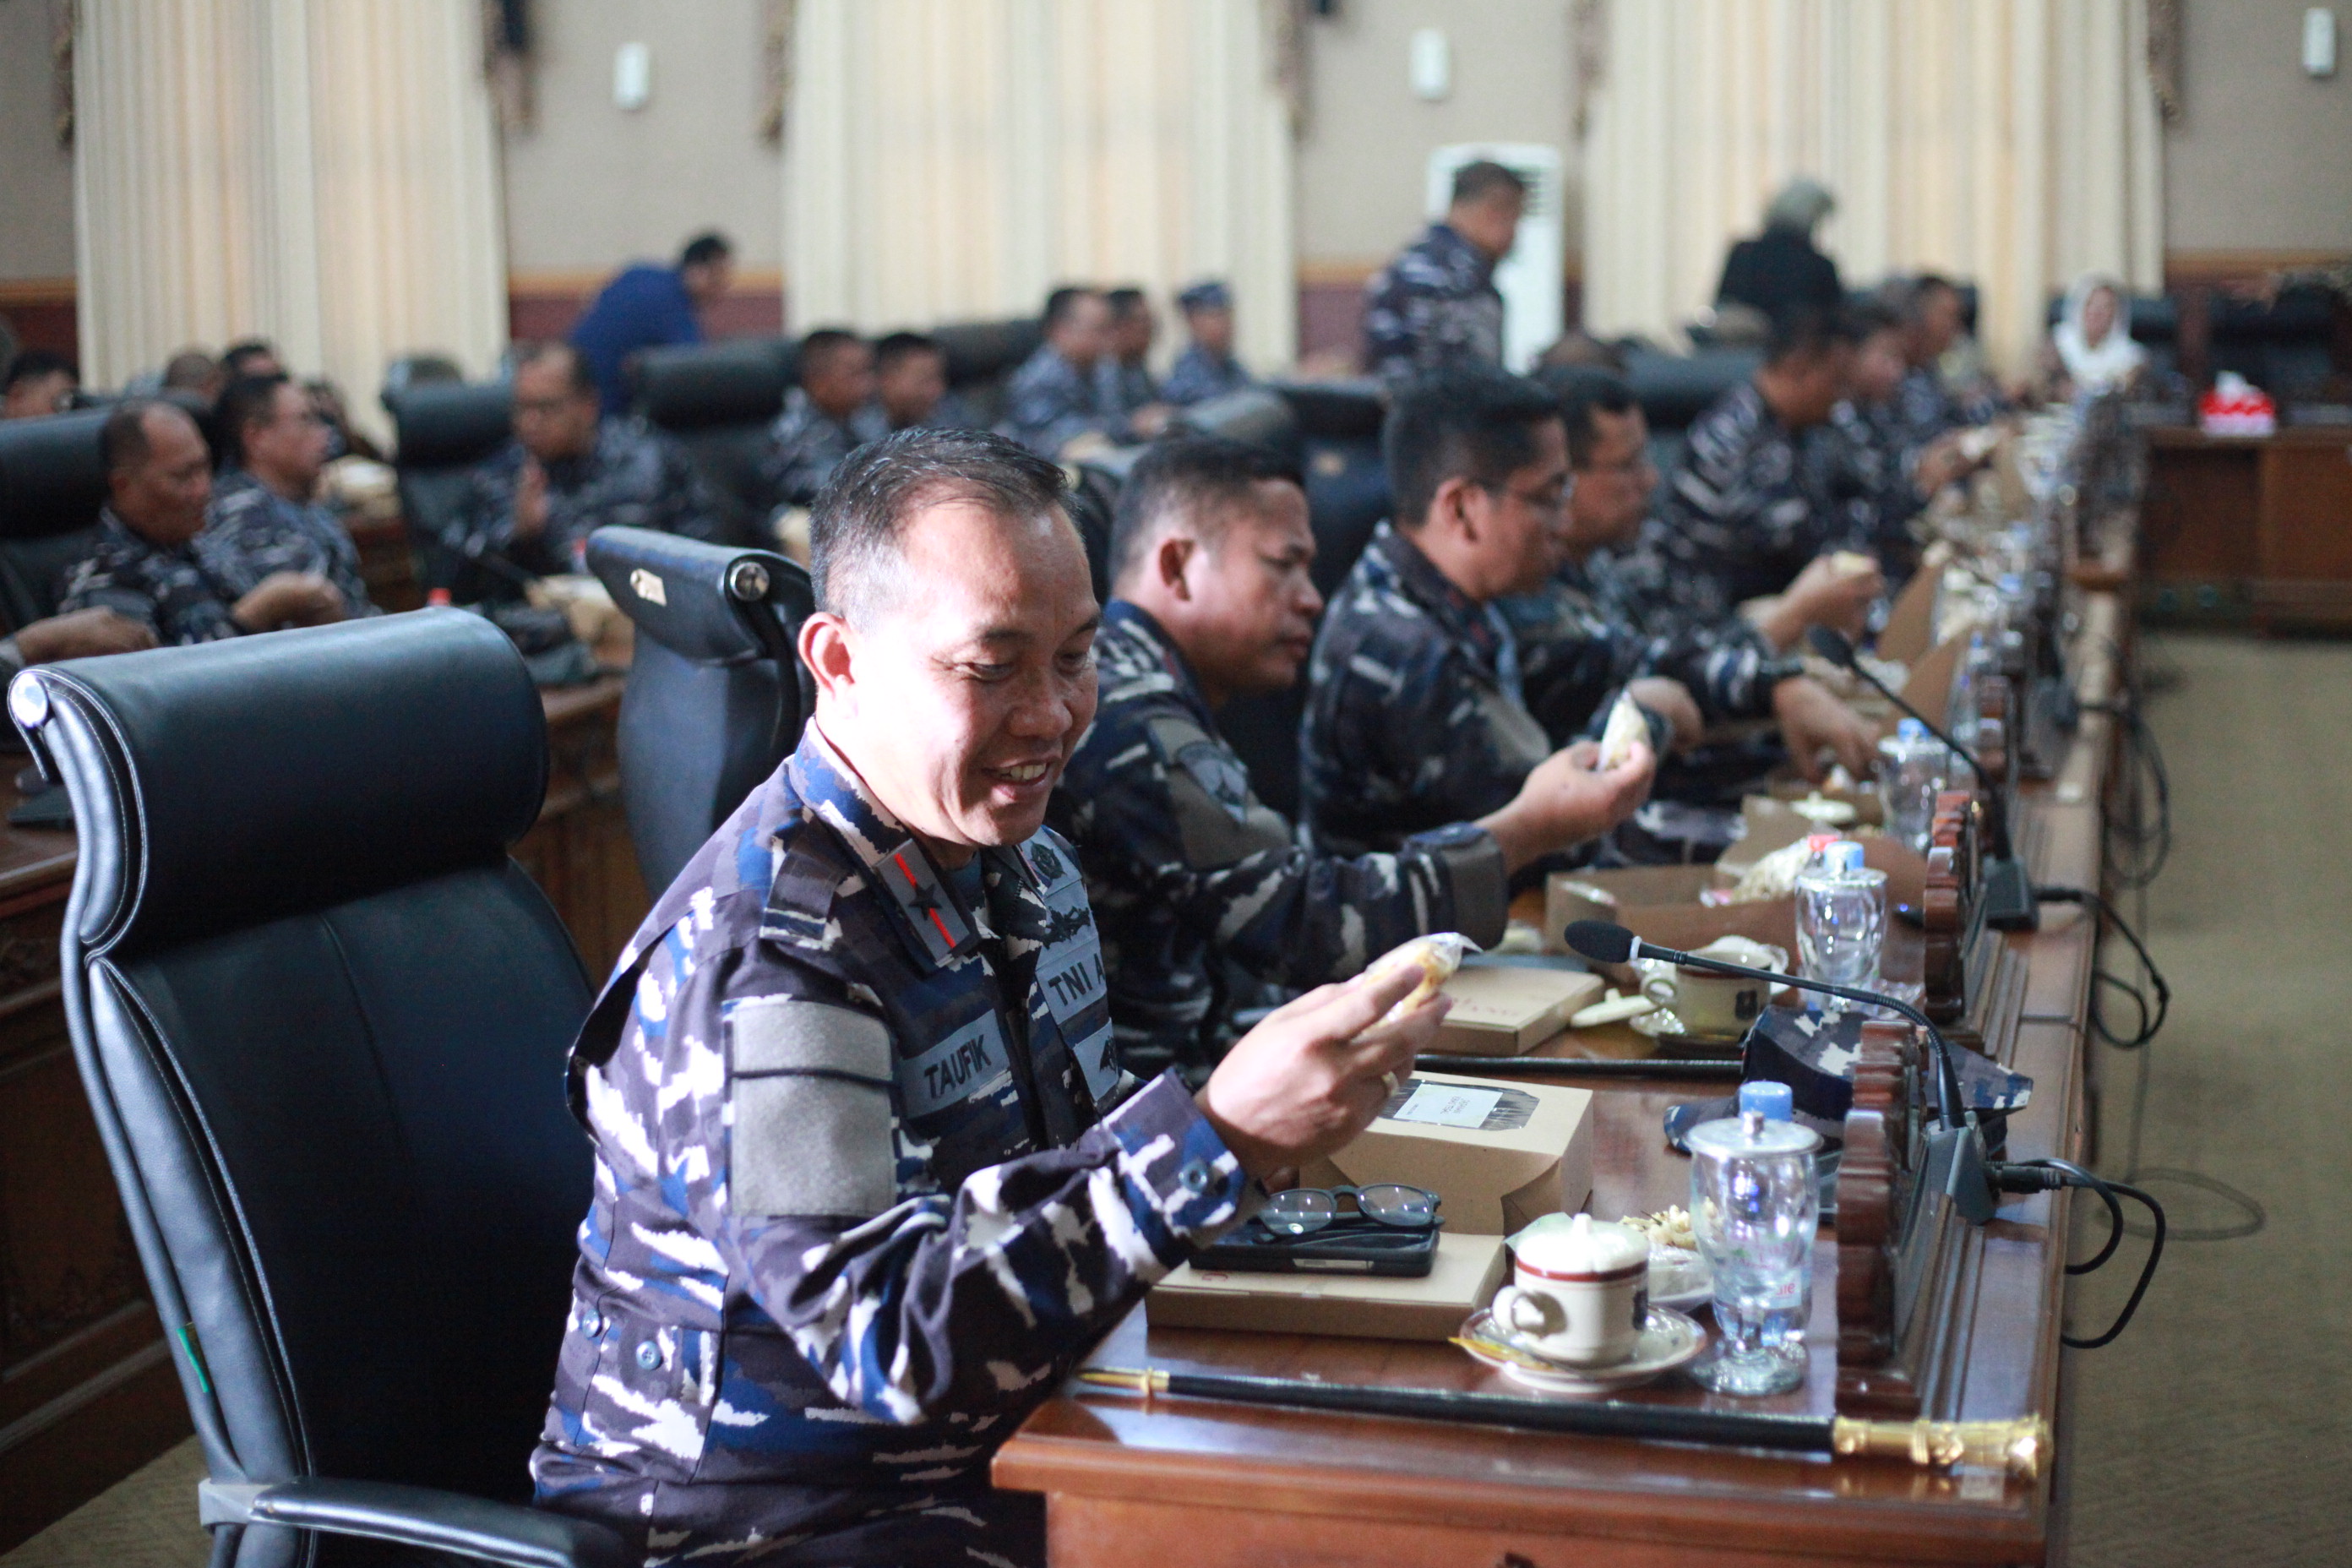 DPRD Kota Tegal Sambut Perwira Tinggi Angkatan Laut, Suguhkan Jajanan Khas Lokal